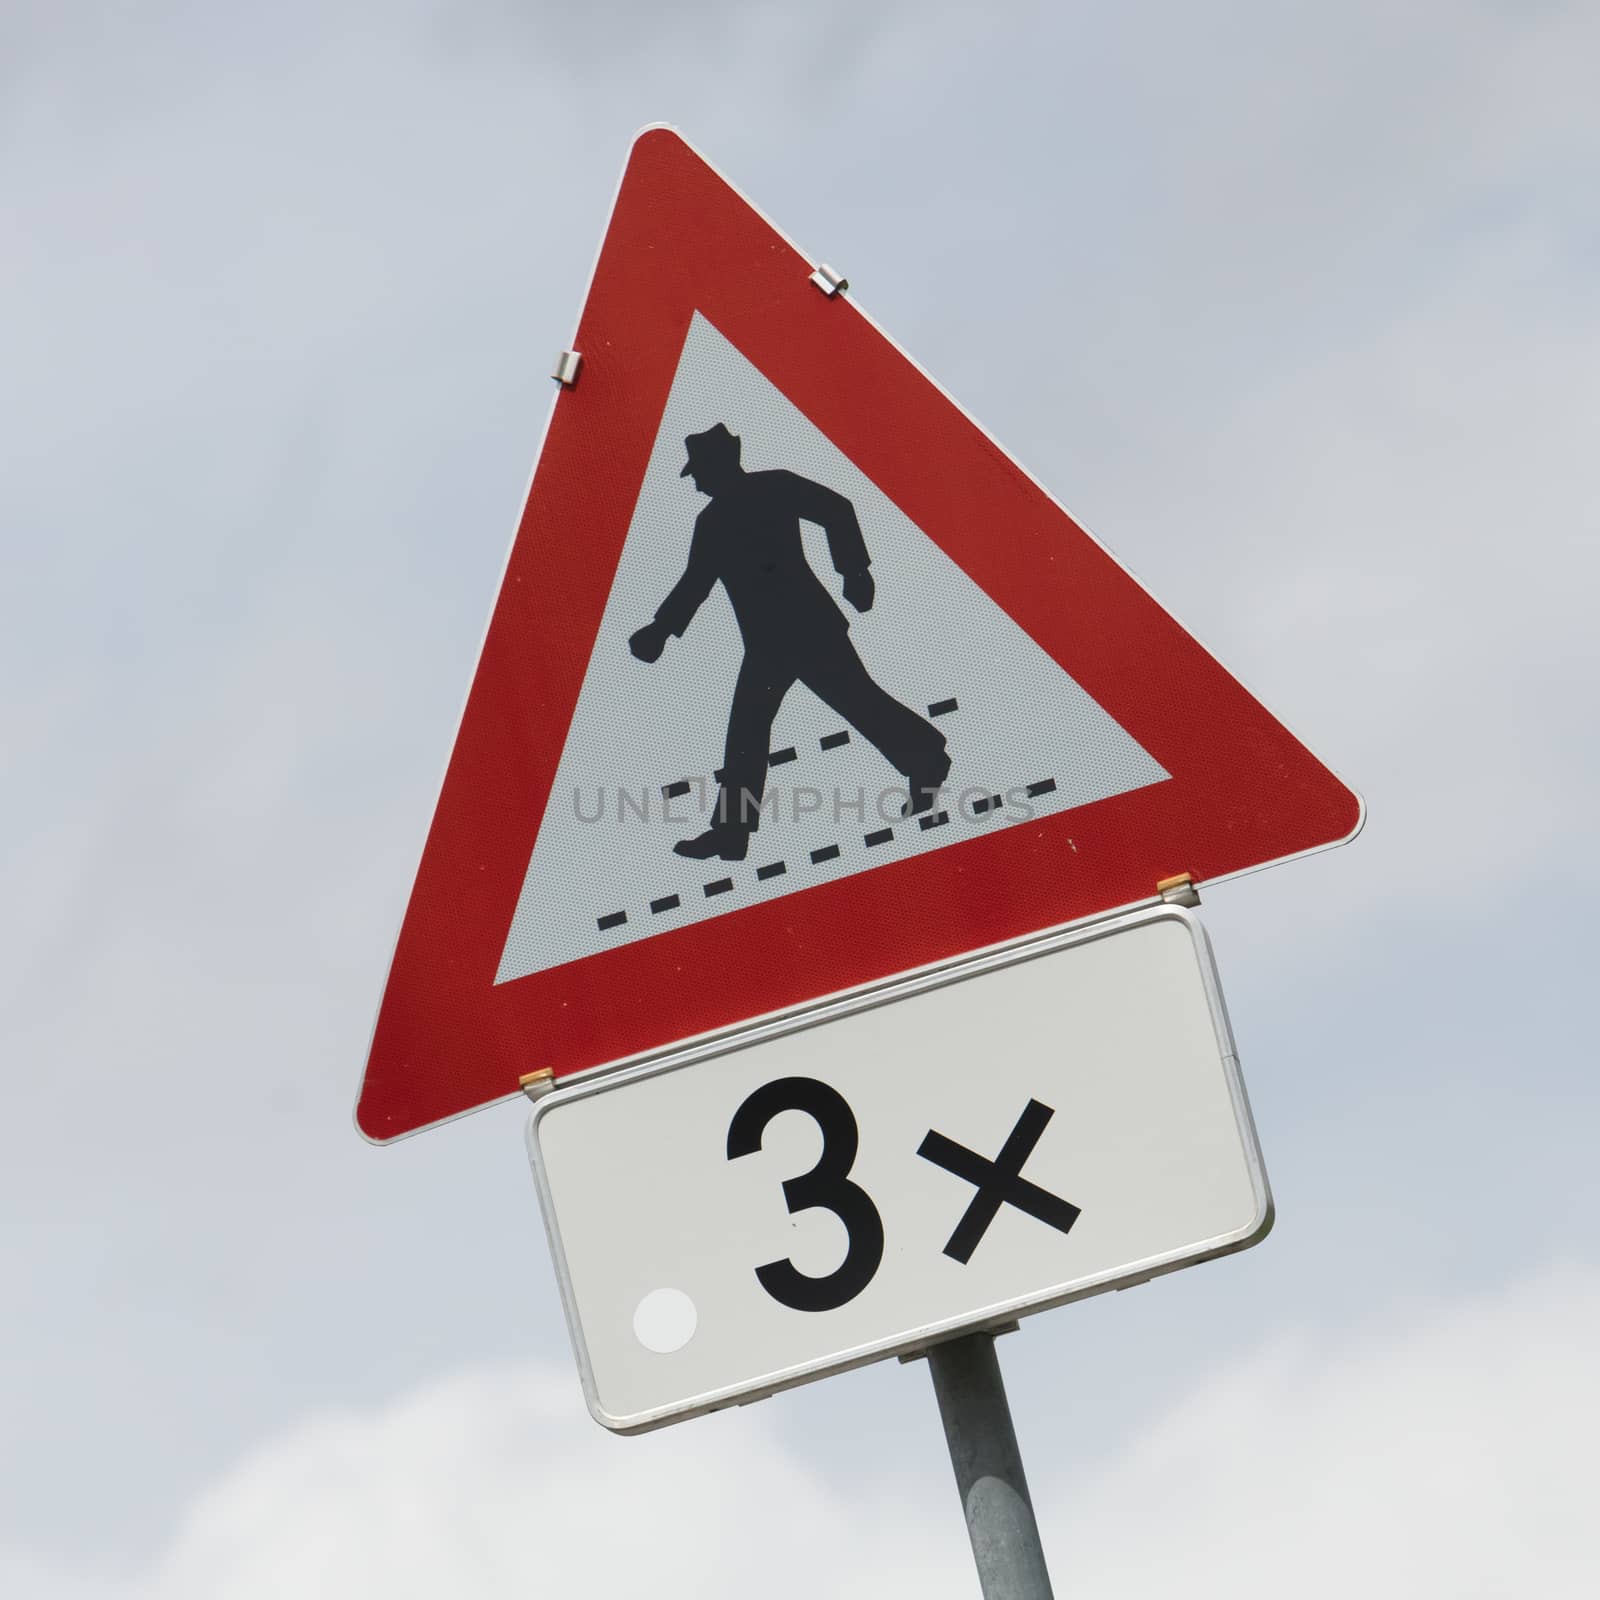 Pedestrians warning sign by michaklootwijk